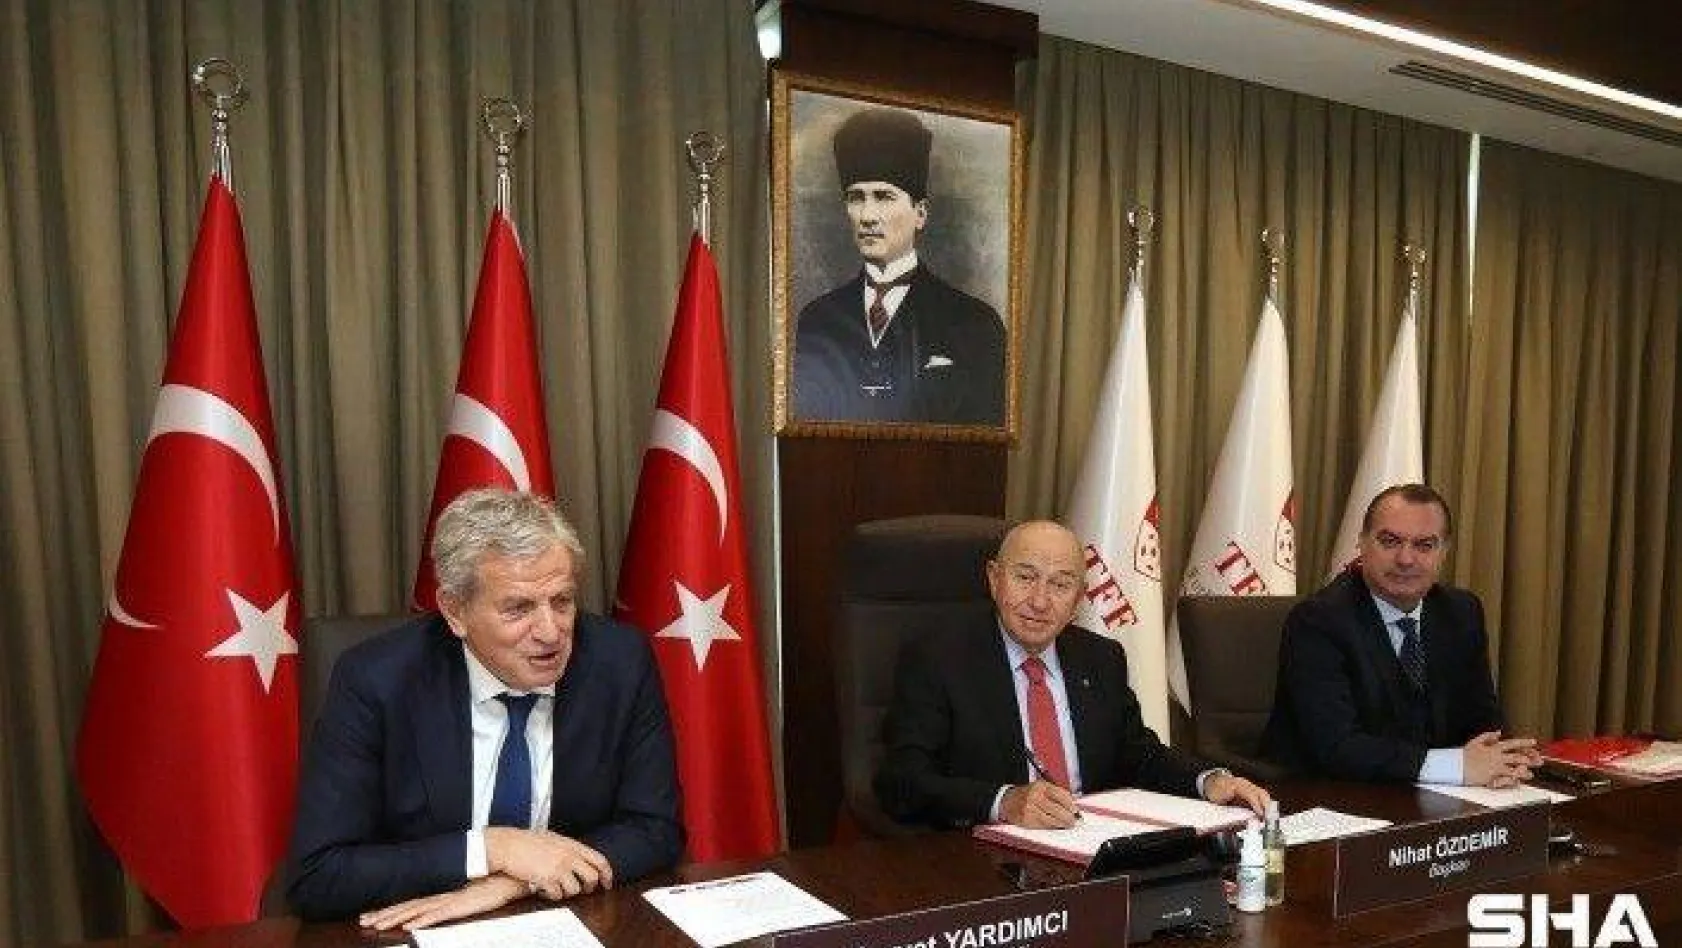 Türk dili konuşan ülkelerin futbol federasyonları arasında iş birliği anlaşması imzalandı